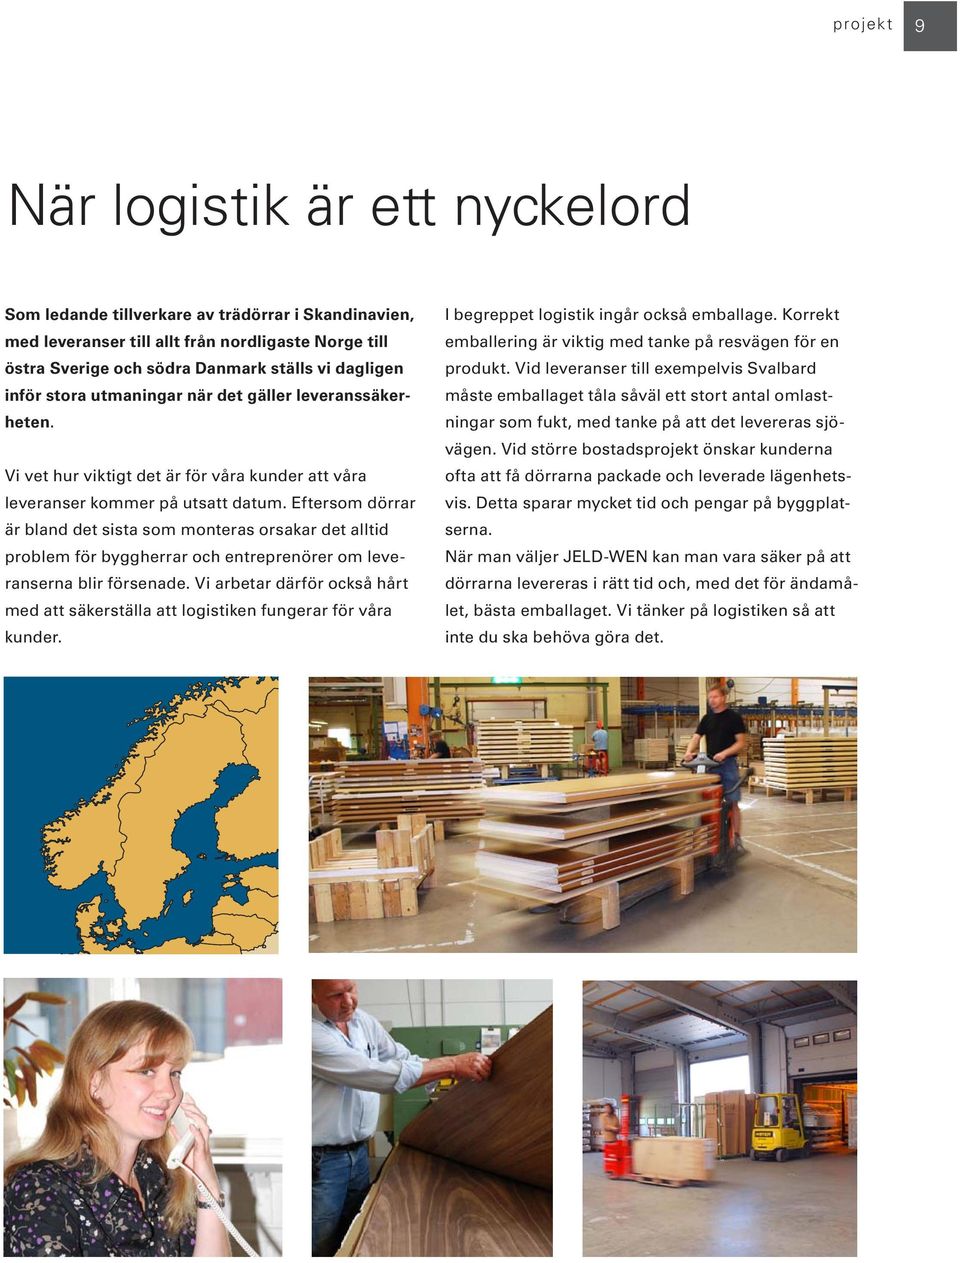 Vid leveranser till exempelvis Svalbard inför stora utmaningar när det gäller leveranssäker- måste emballaget tåla såväl ett stort antal omlast- heten.